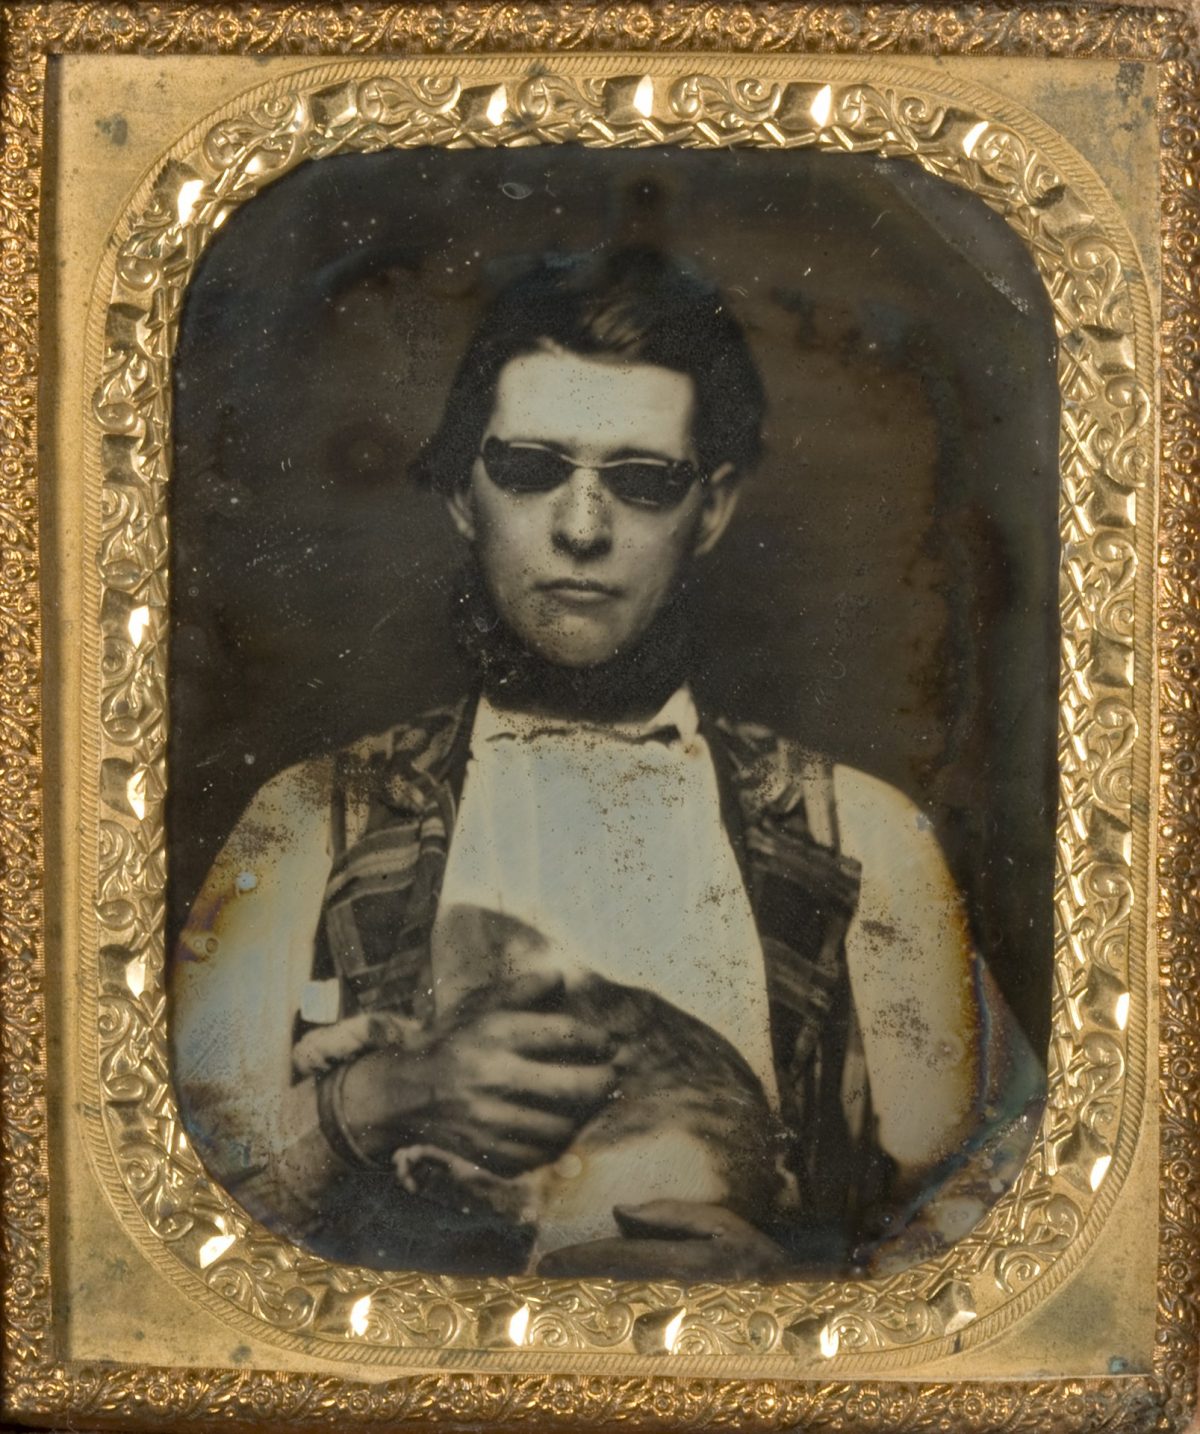  1850. Daguerreotype. George Eastman Museum